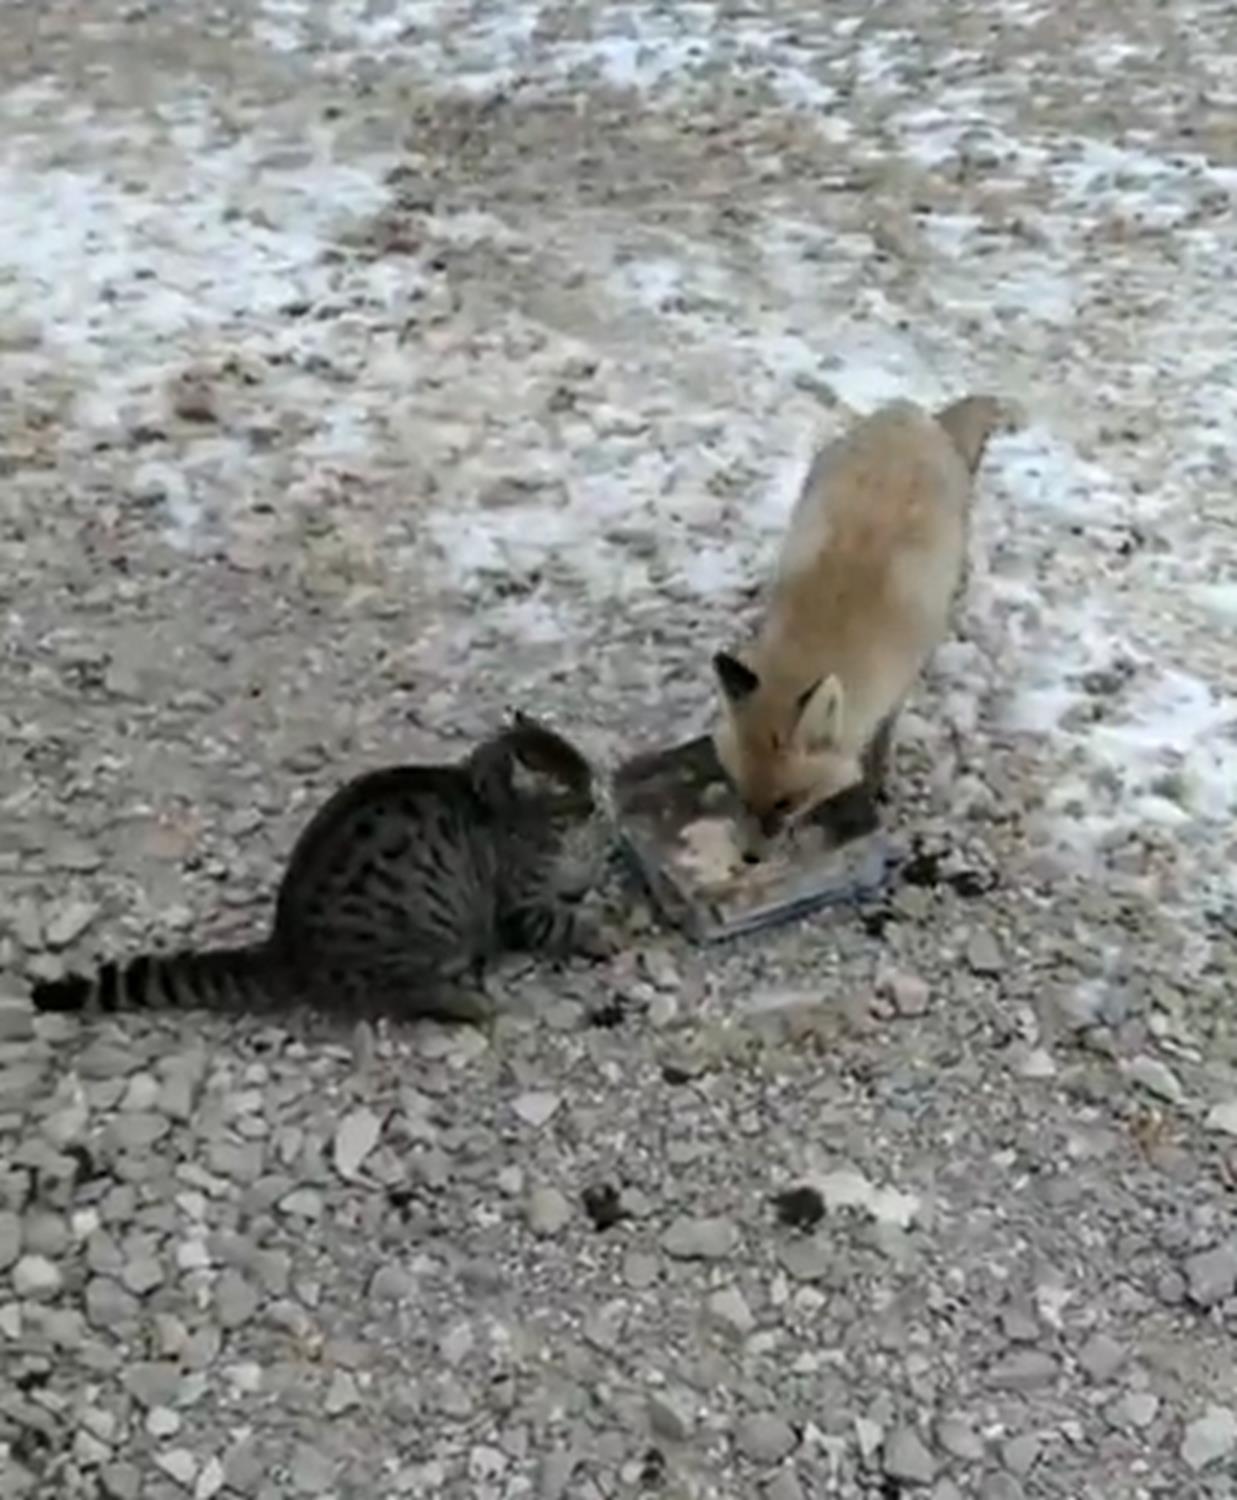 Beki a kalp antiyeye gelen tilkiyi, kedisiyle birlikte besledi